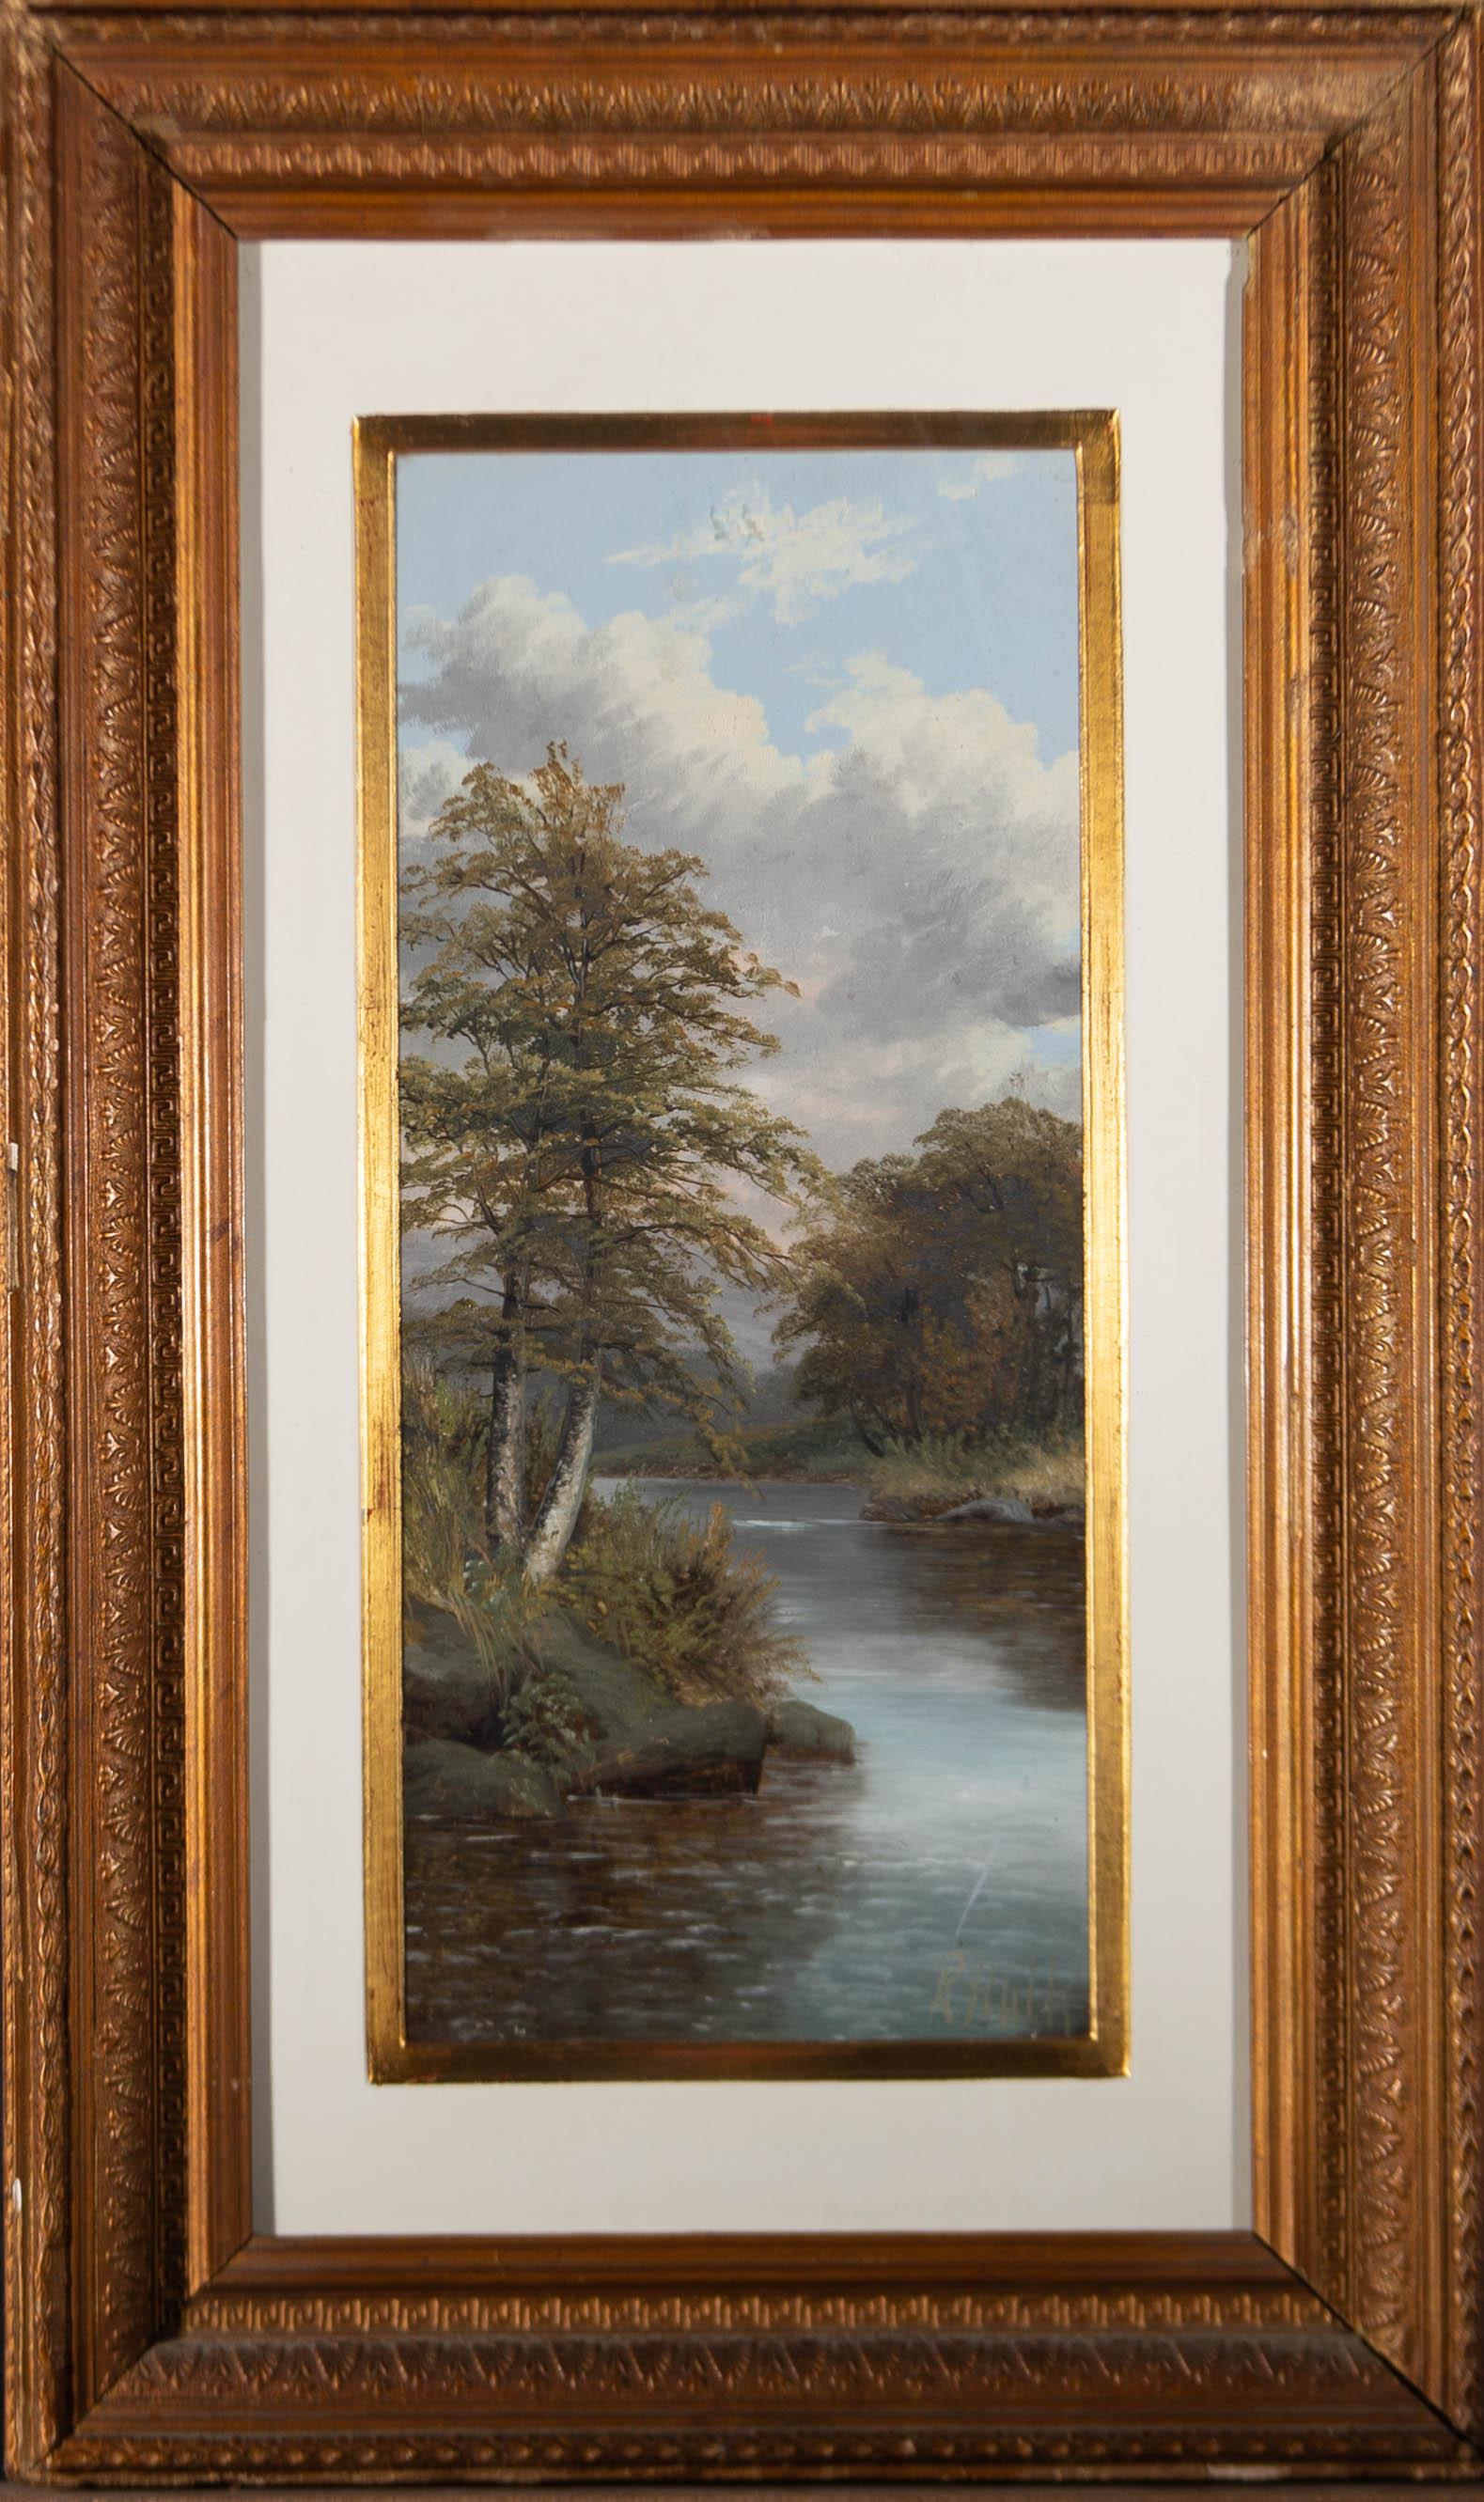 Une charmante scène de rivière avec des arbres par R. Hulk. Signé dans le coin inférieur droit. Bien présenté dans une monture peinte en blanc et or et dans un cadre orné à effet doré, comme indiqué. A bord.